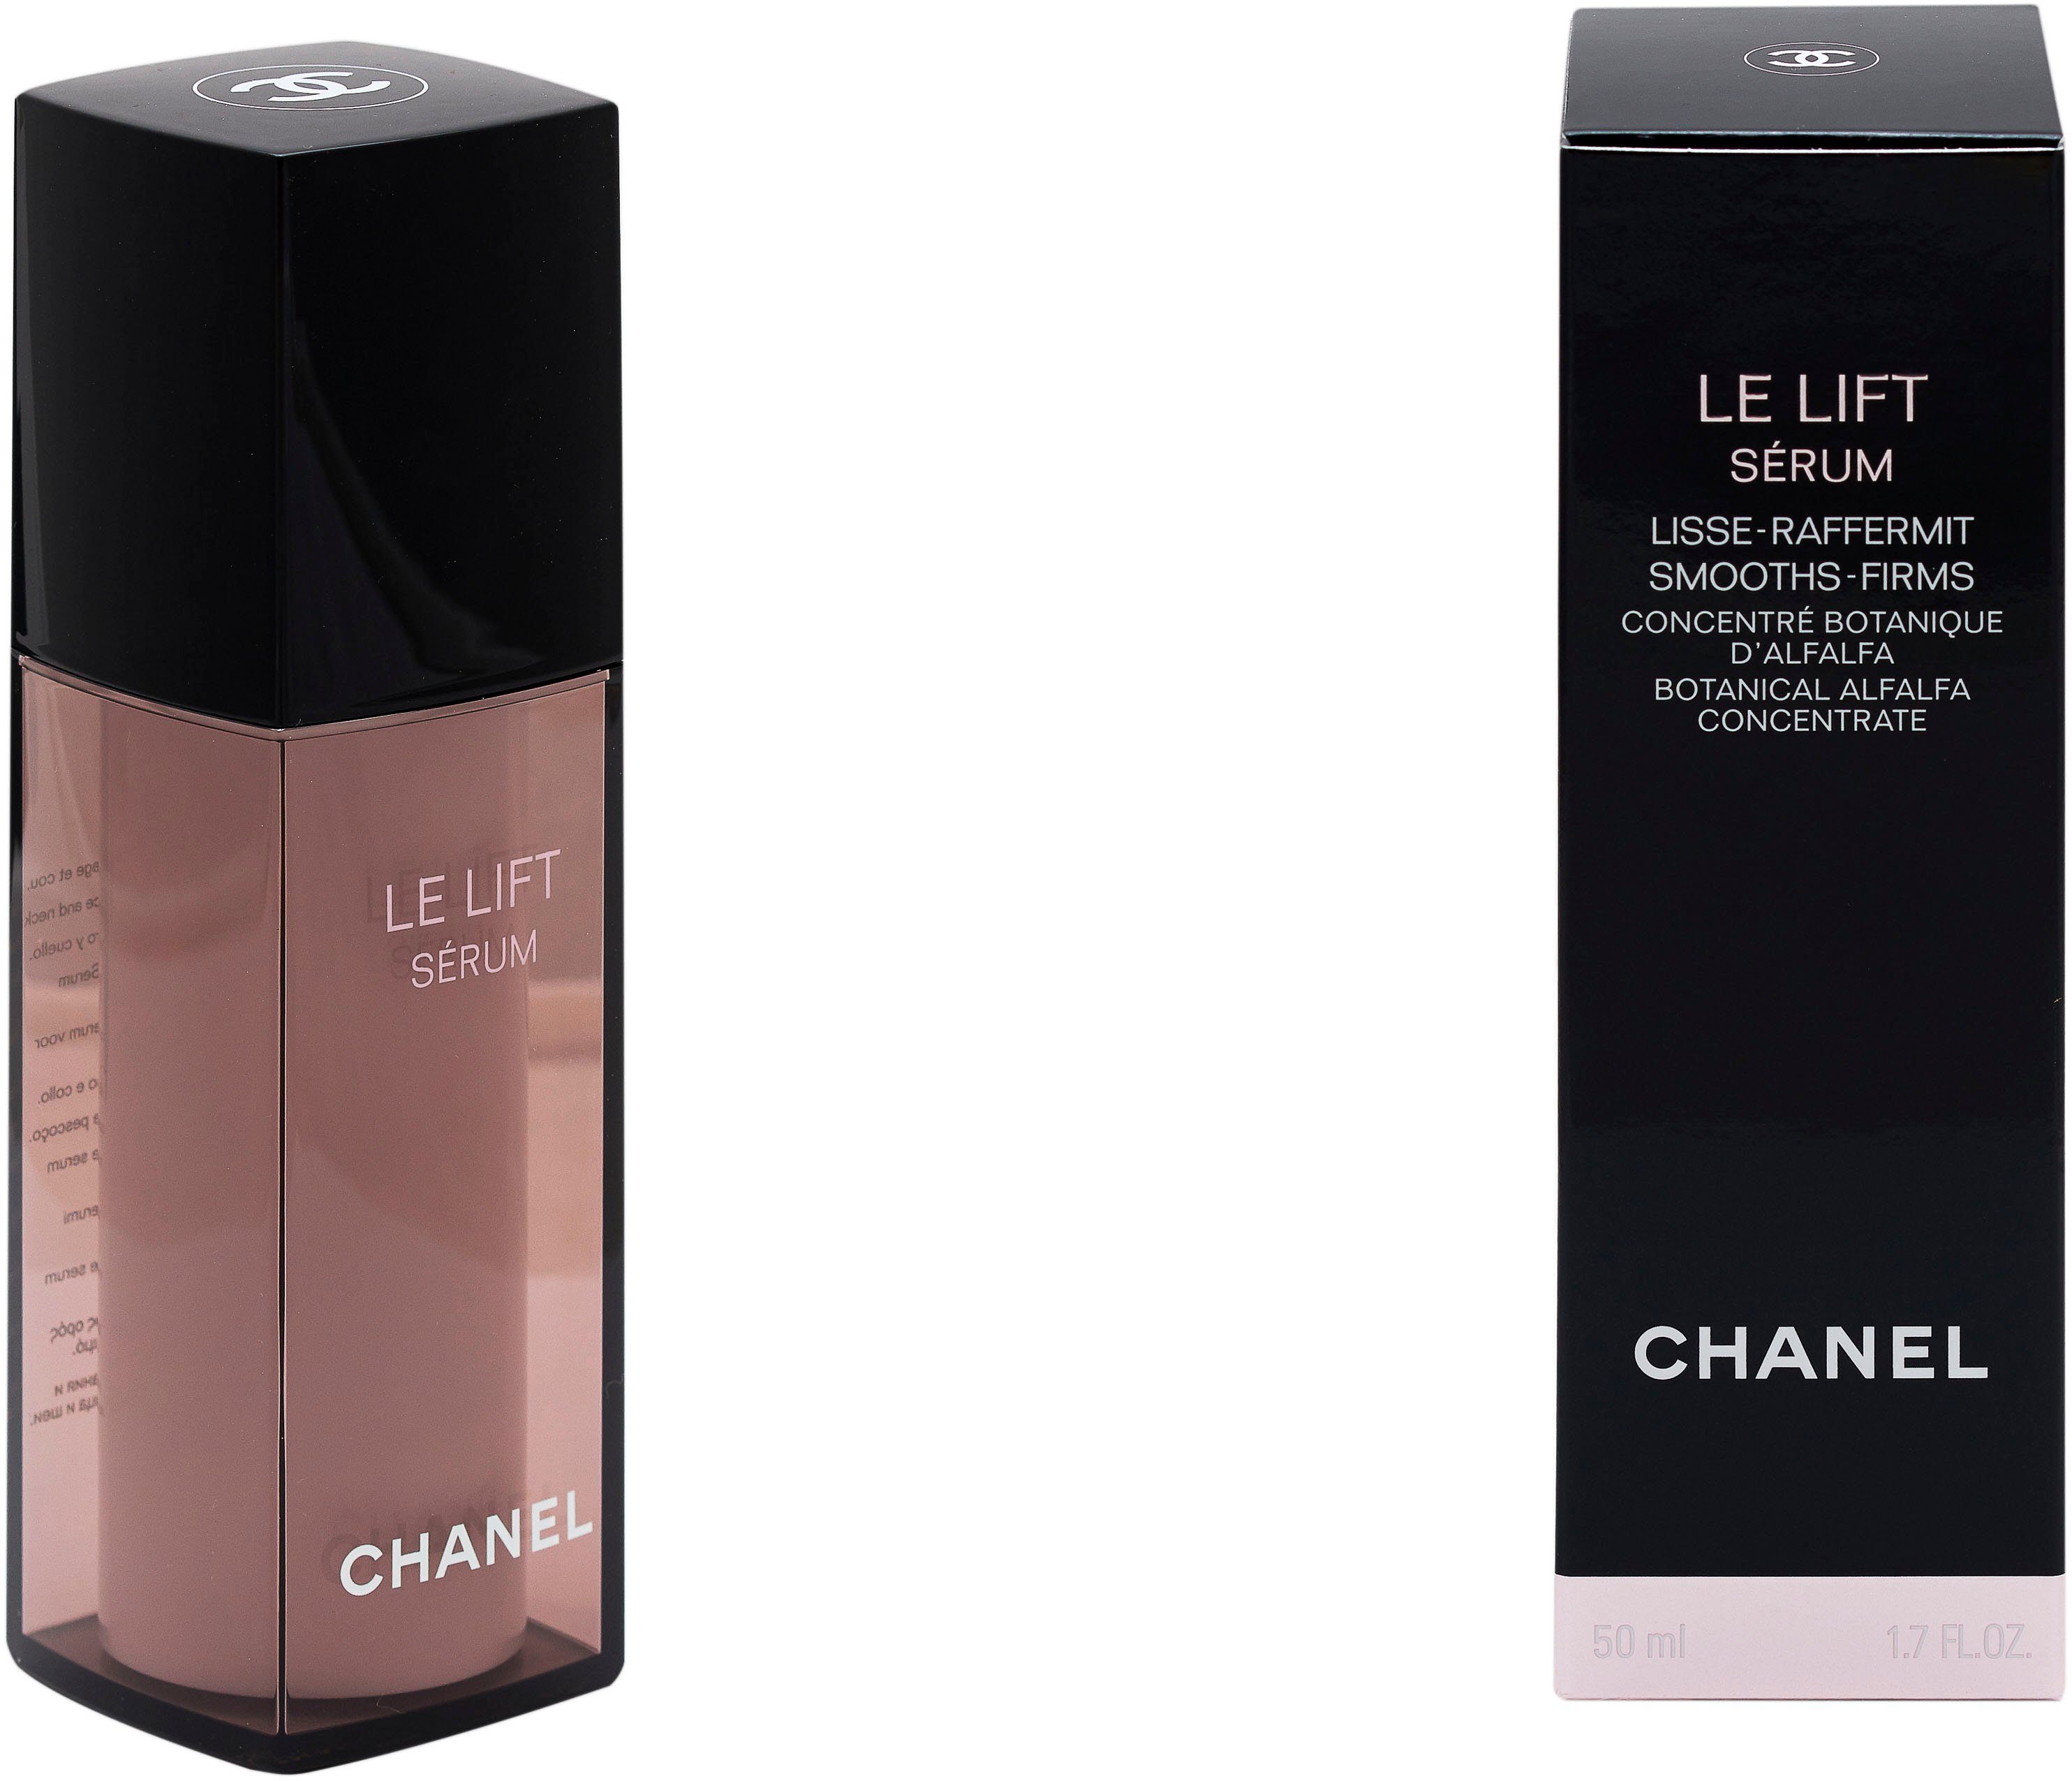 Le Gesichtsserum Chanel Lisse-Raffermint Lift CHANEL Serum